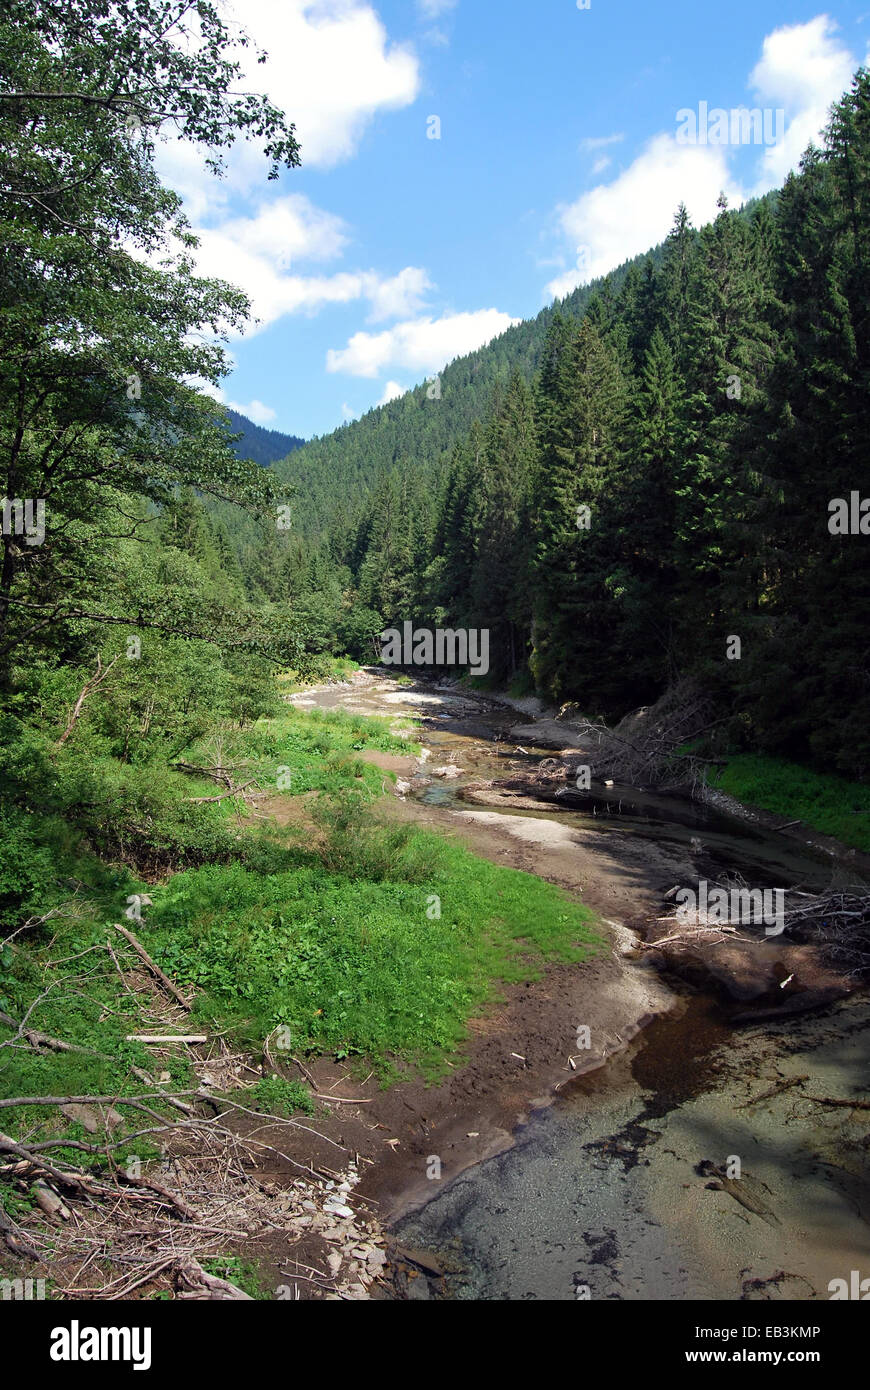 Rackova dolina valley in Zapadne Tatry mountains Stock Photo